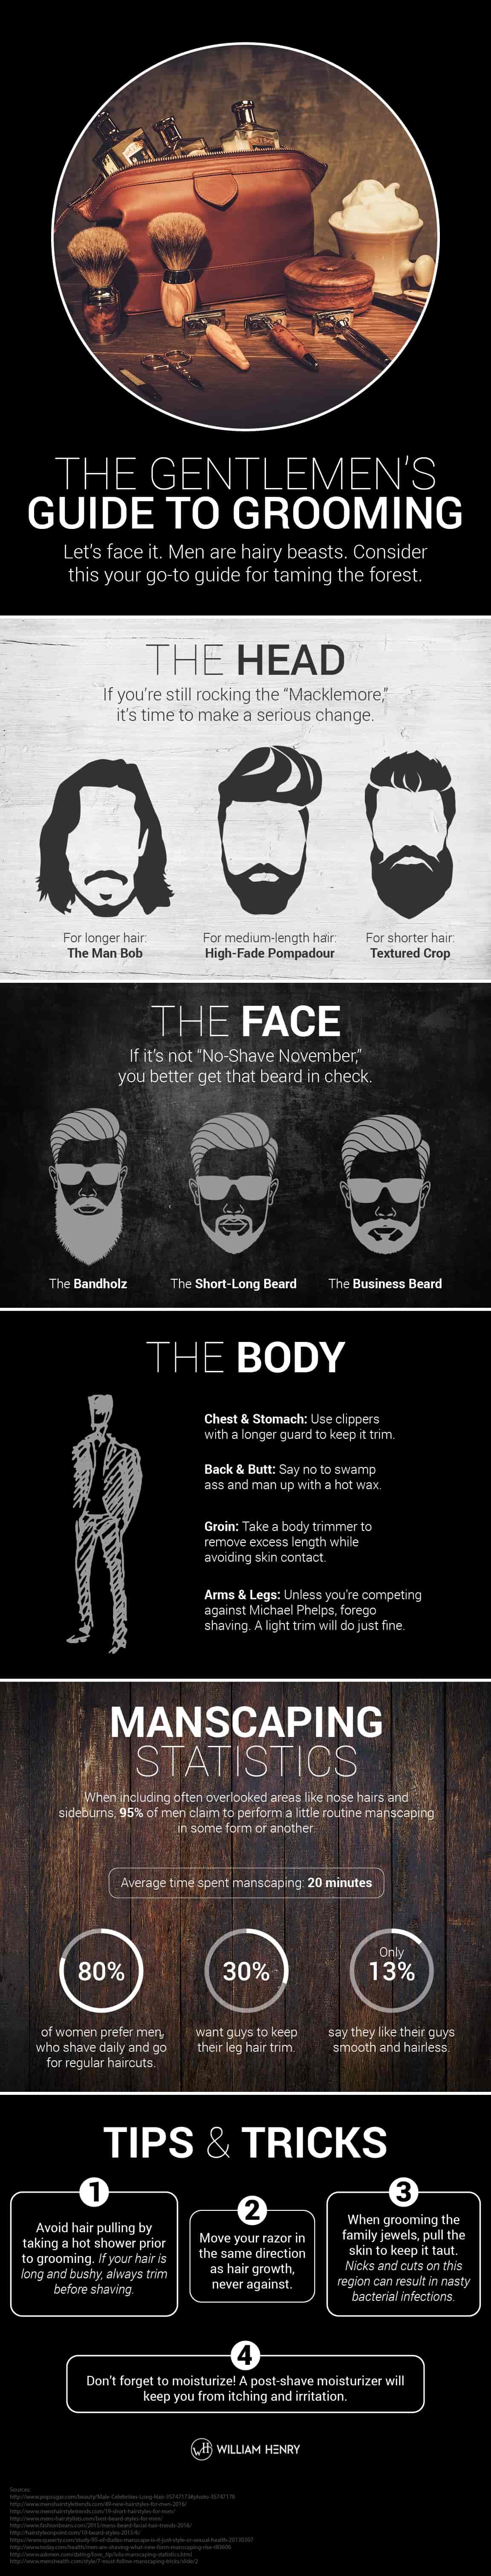 Gentlemen's Guide to Grooming infographic